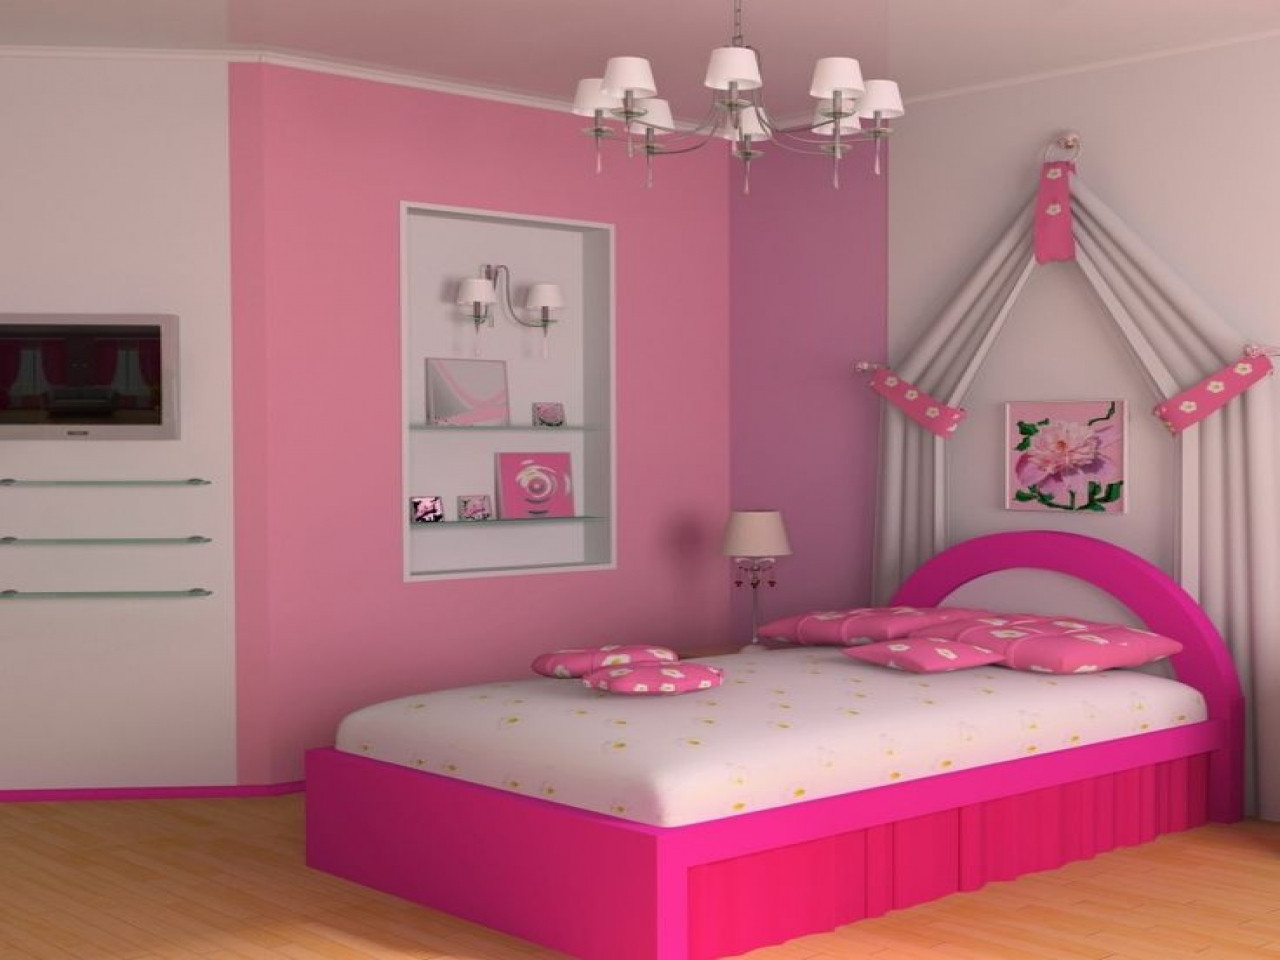 Discount Kids Bedroom Sets
 Toddler bedroom furniture sets cheap kids bedroom sets on